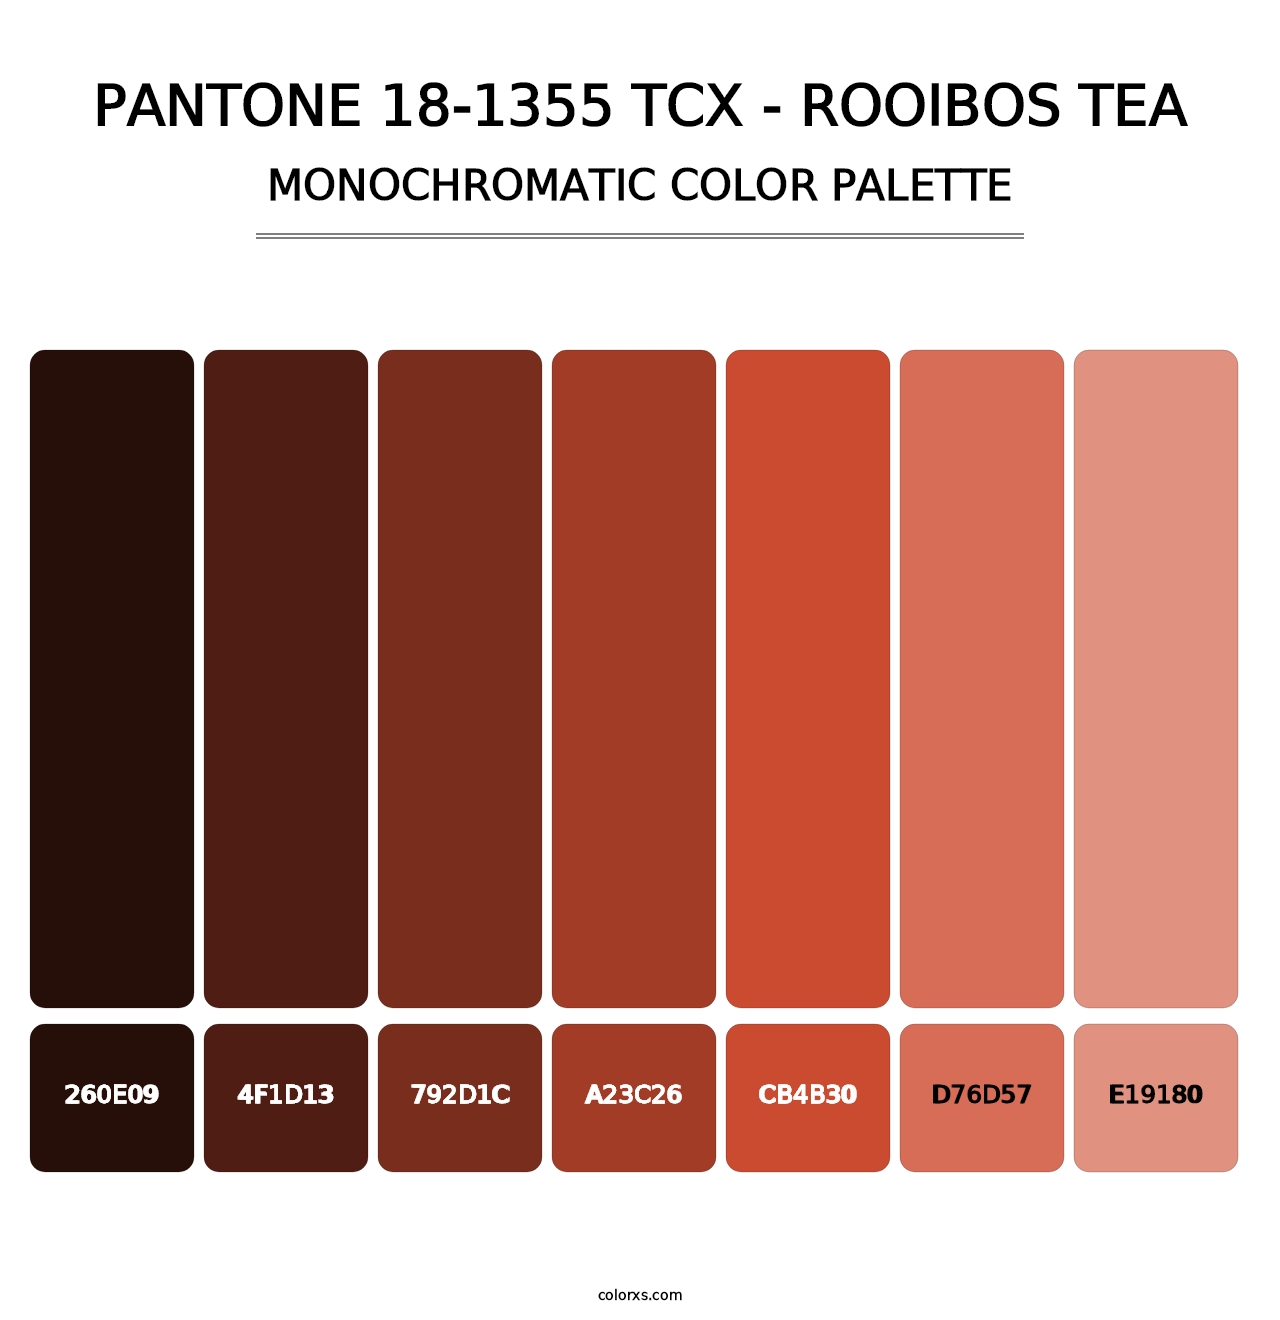 PANTONE 18-1355 TCX - Rooibos Tea - Monochromatic Color Palette